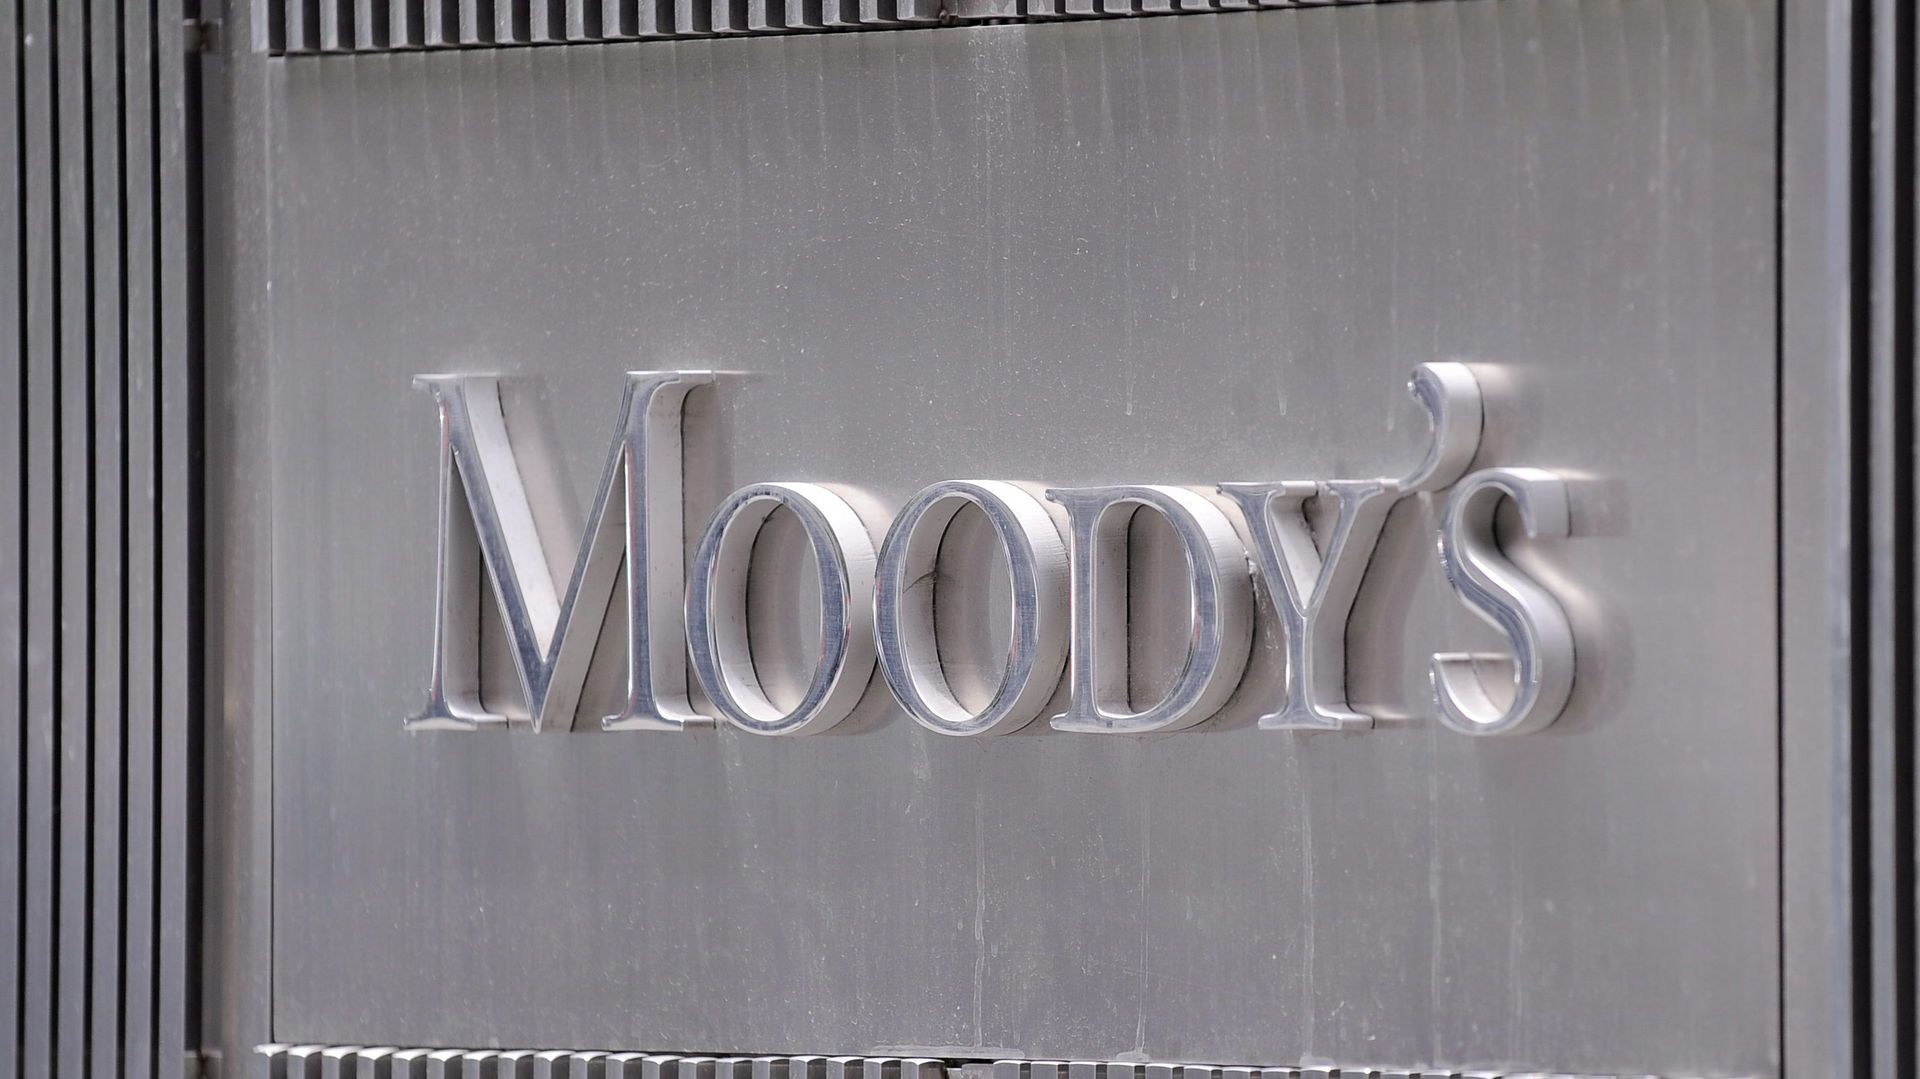 Conflits d'intérêts: Moody's écope d'une amende européenne de 3,7 millions d'euros